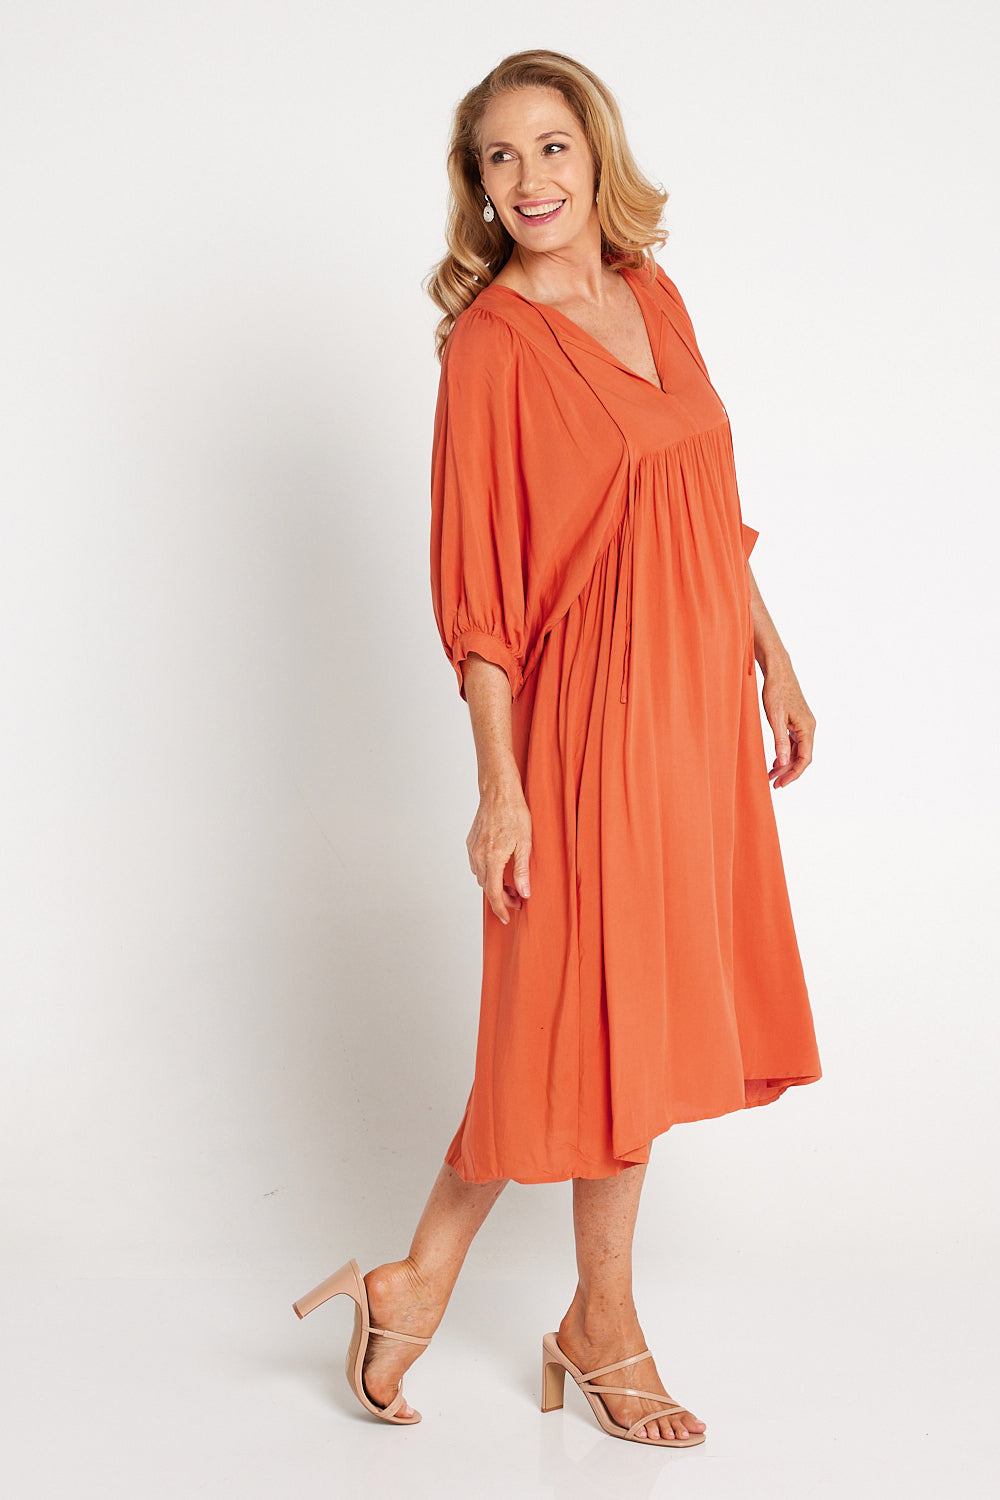 Lani Dress - Orange